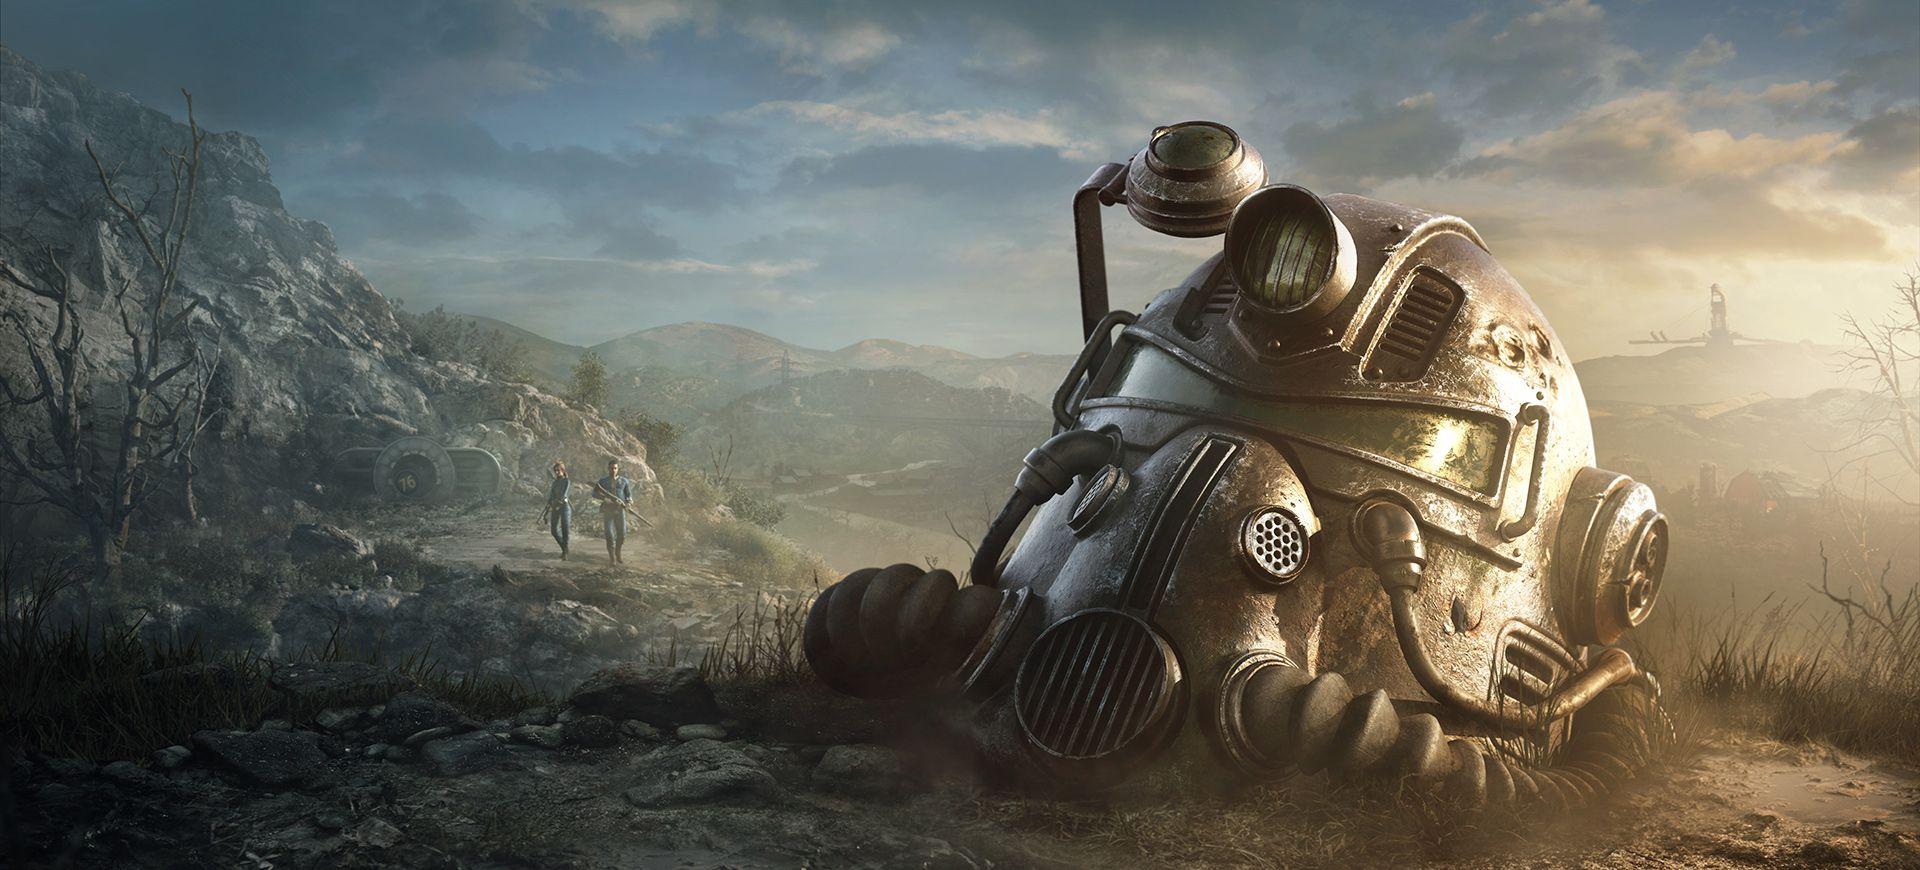 Czy Fallout 76 jest grą międzyplatformową i czy obsługuje cross-play?